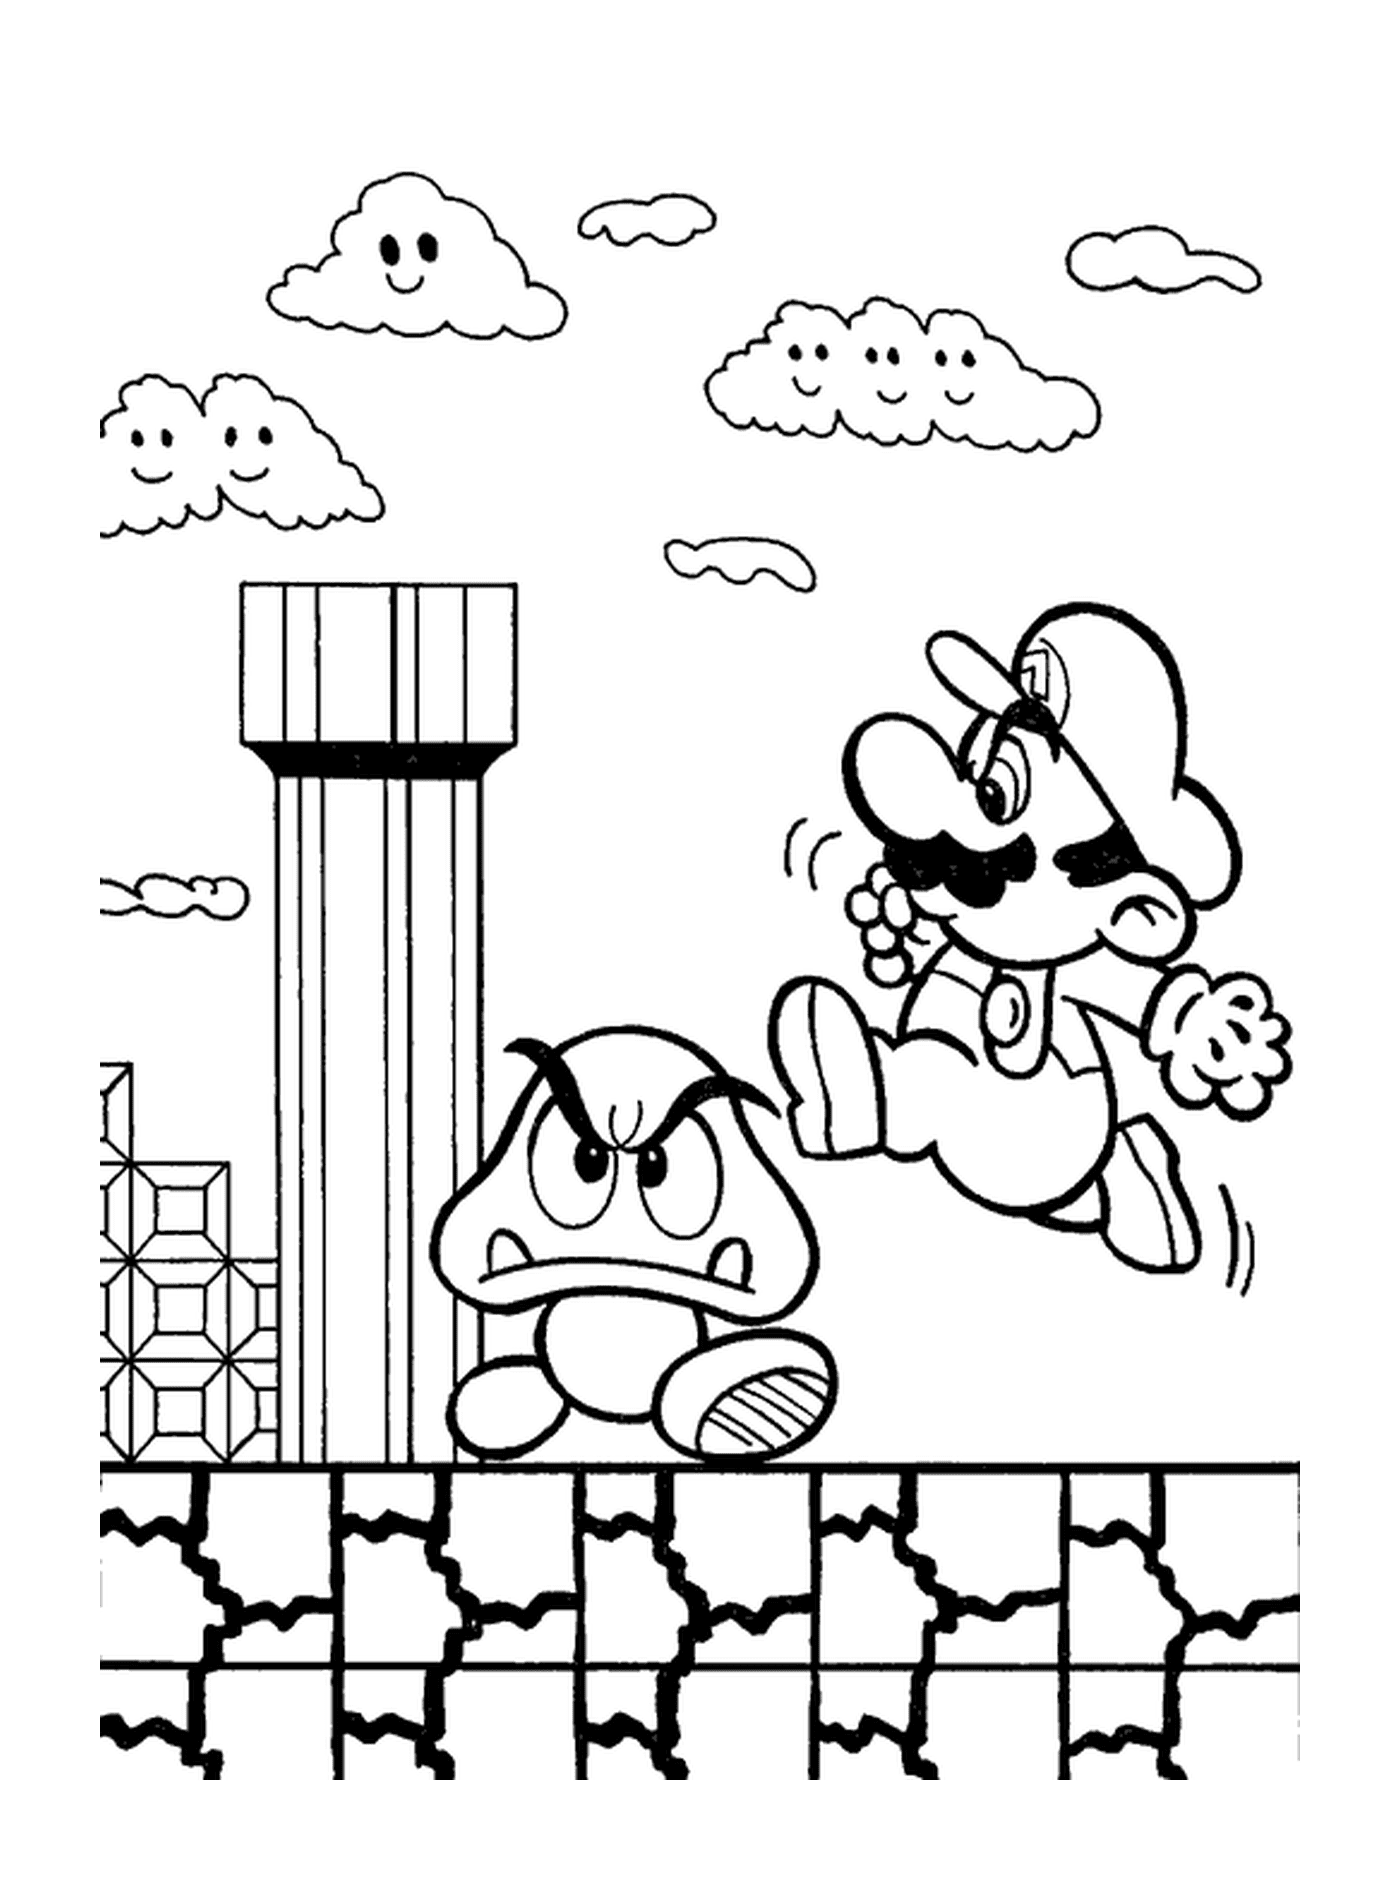  Марио прыгает на волшебный гриб 